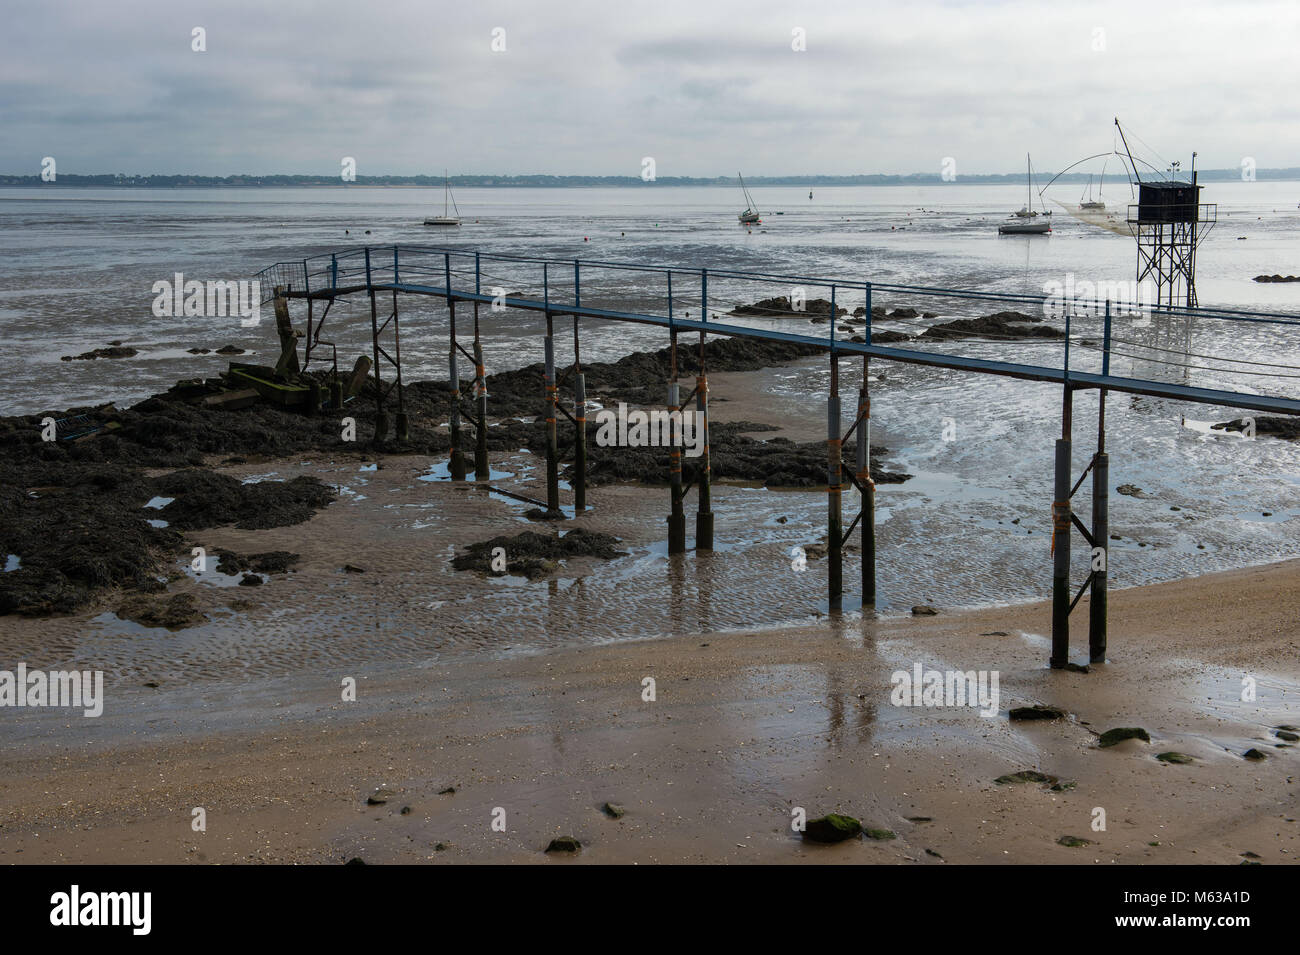 Saint Nazaire, la spiaggia con la bassa marea. Francia Foto Stock